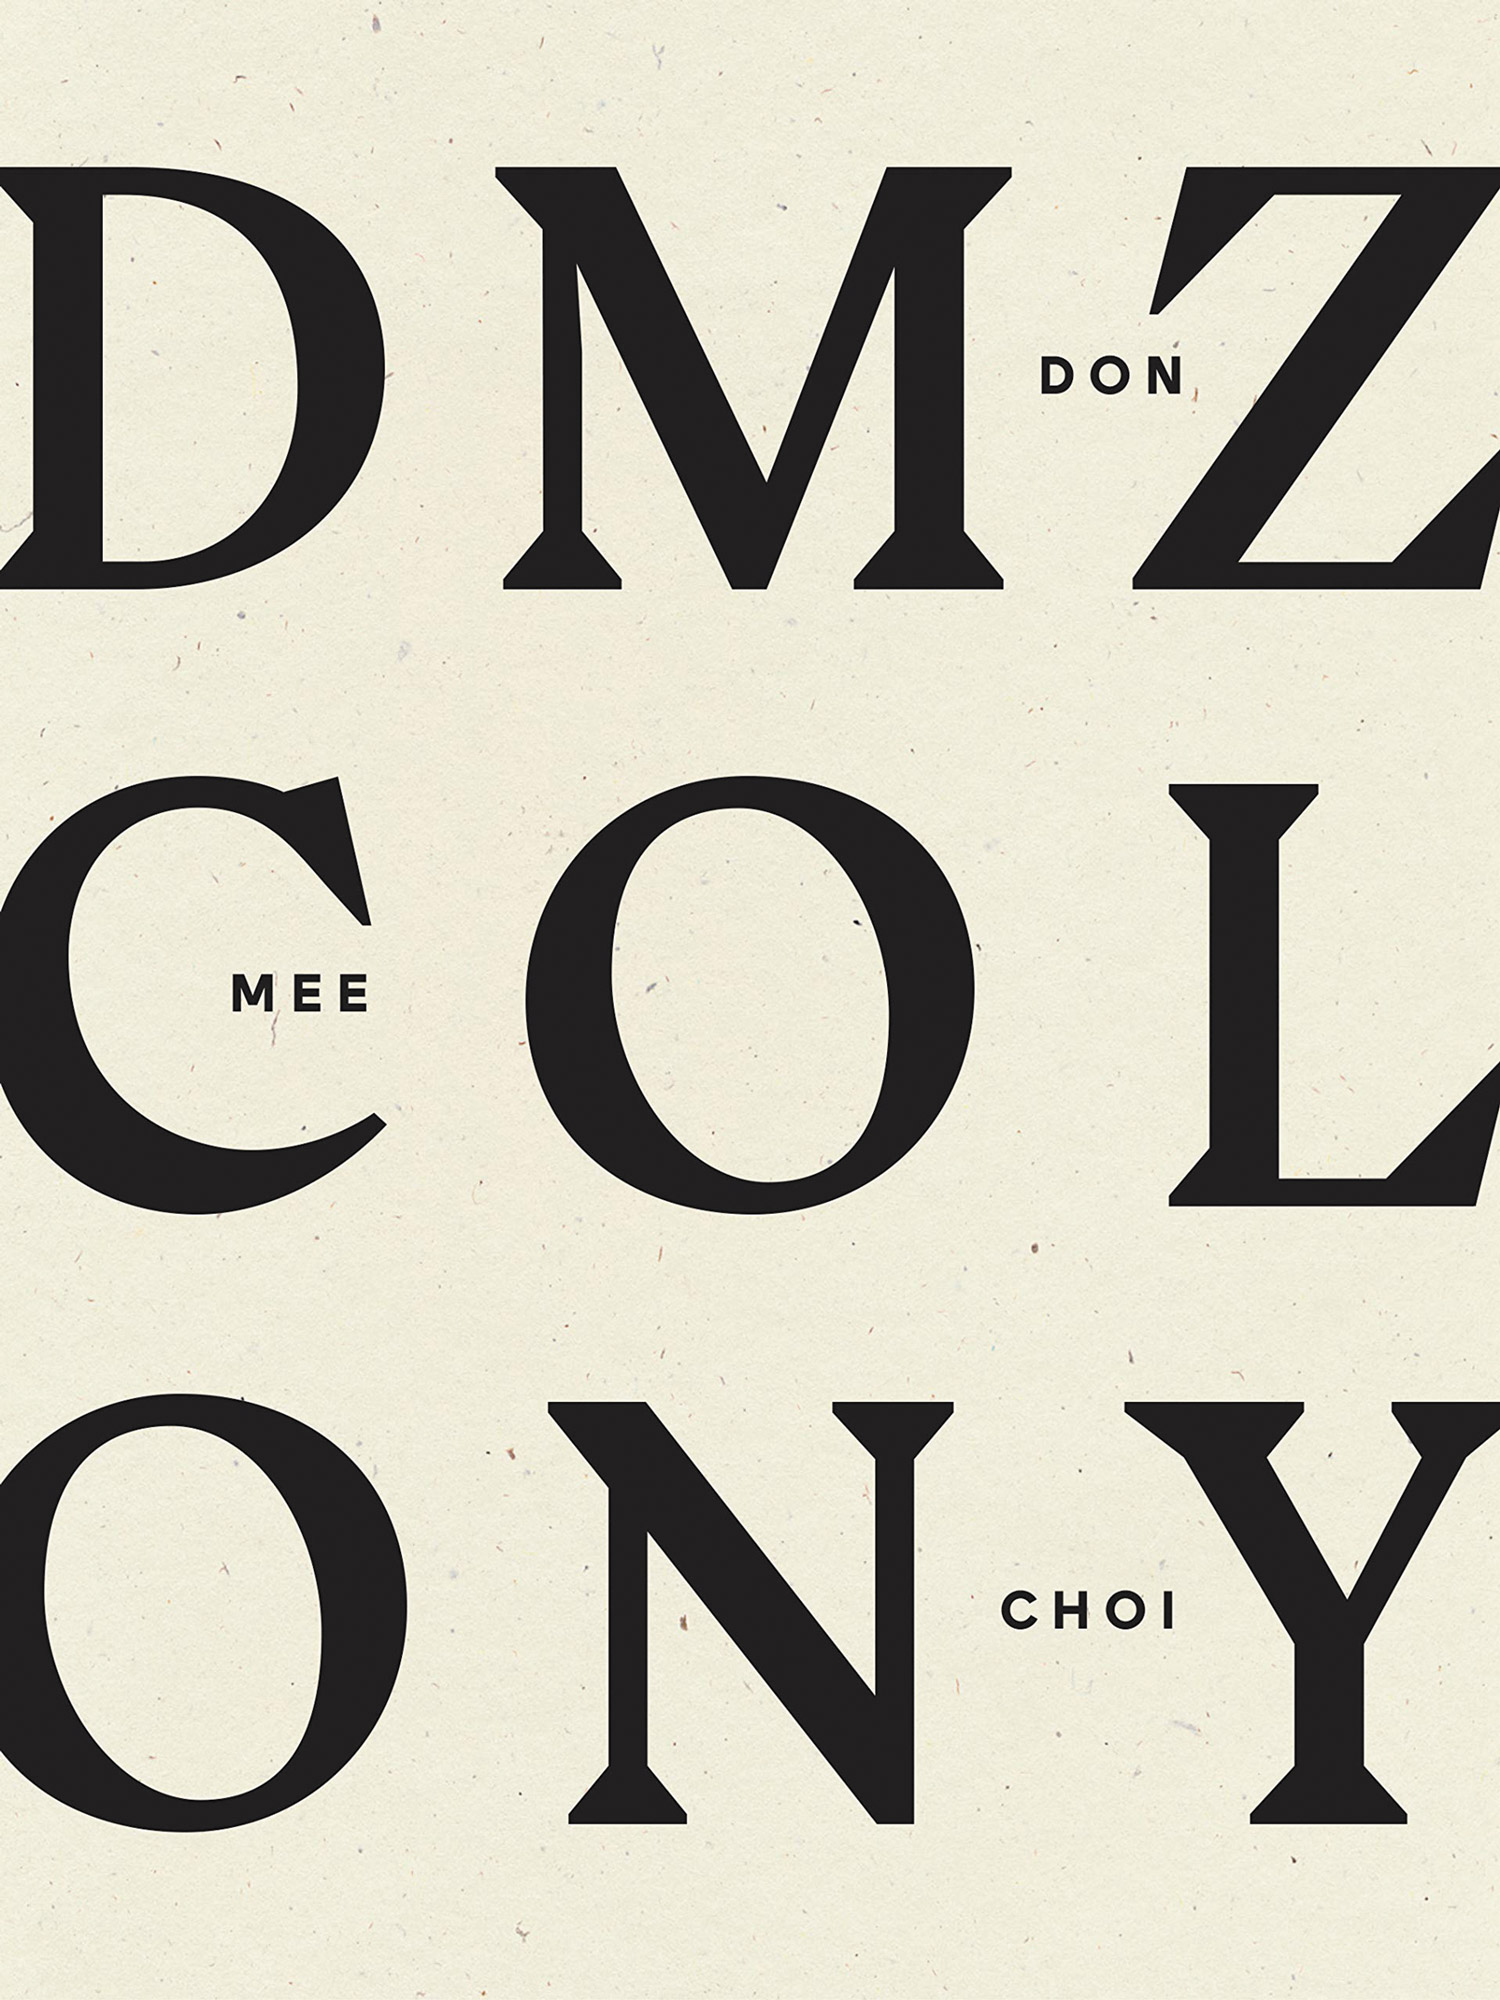 DMZColony_Book Club May 2022 by Hana Zittel